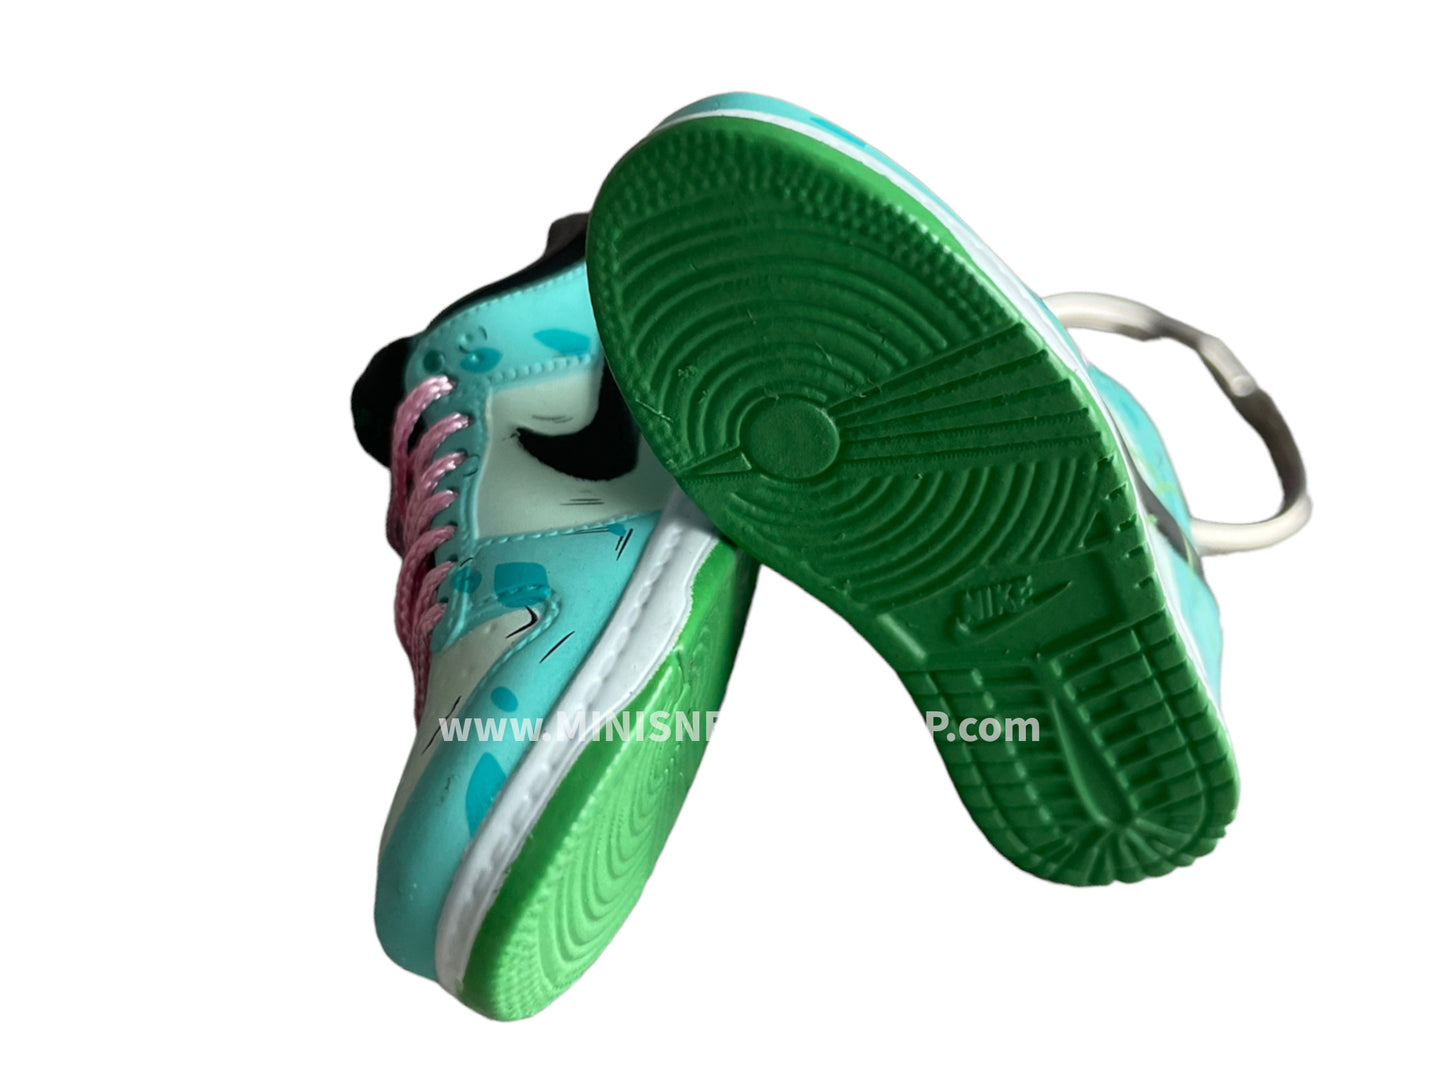 Mini sneaker keychain 3D Dunk - South Beach